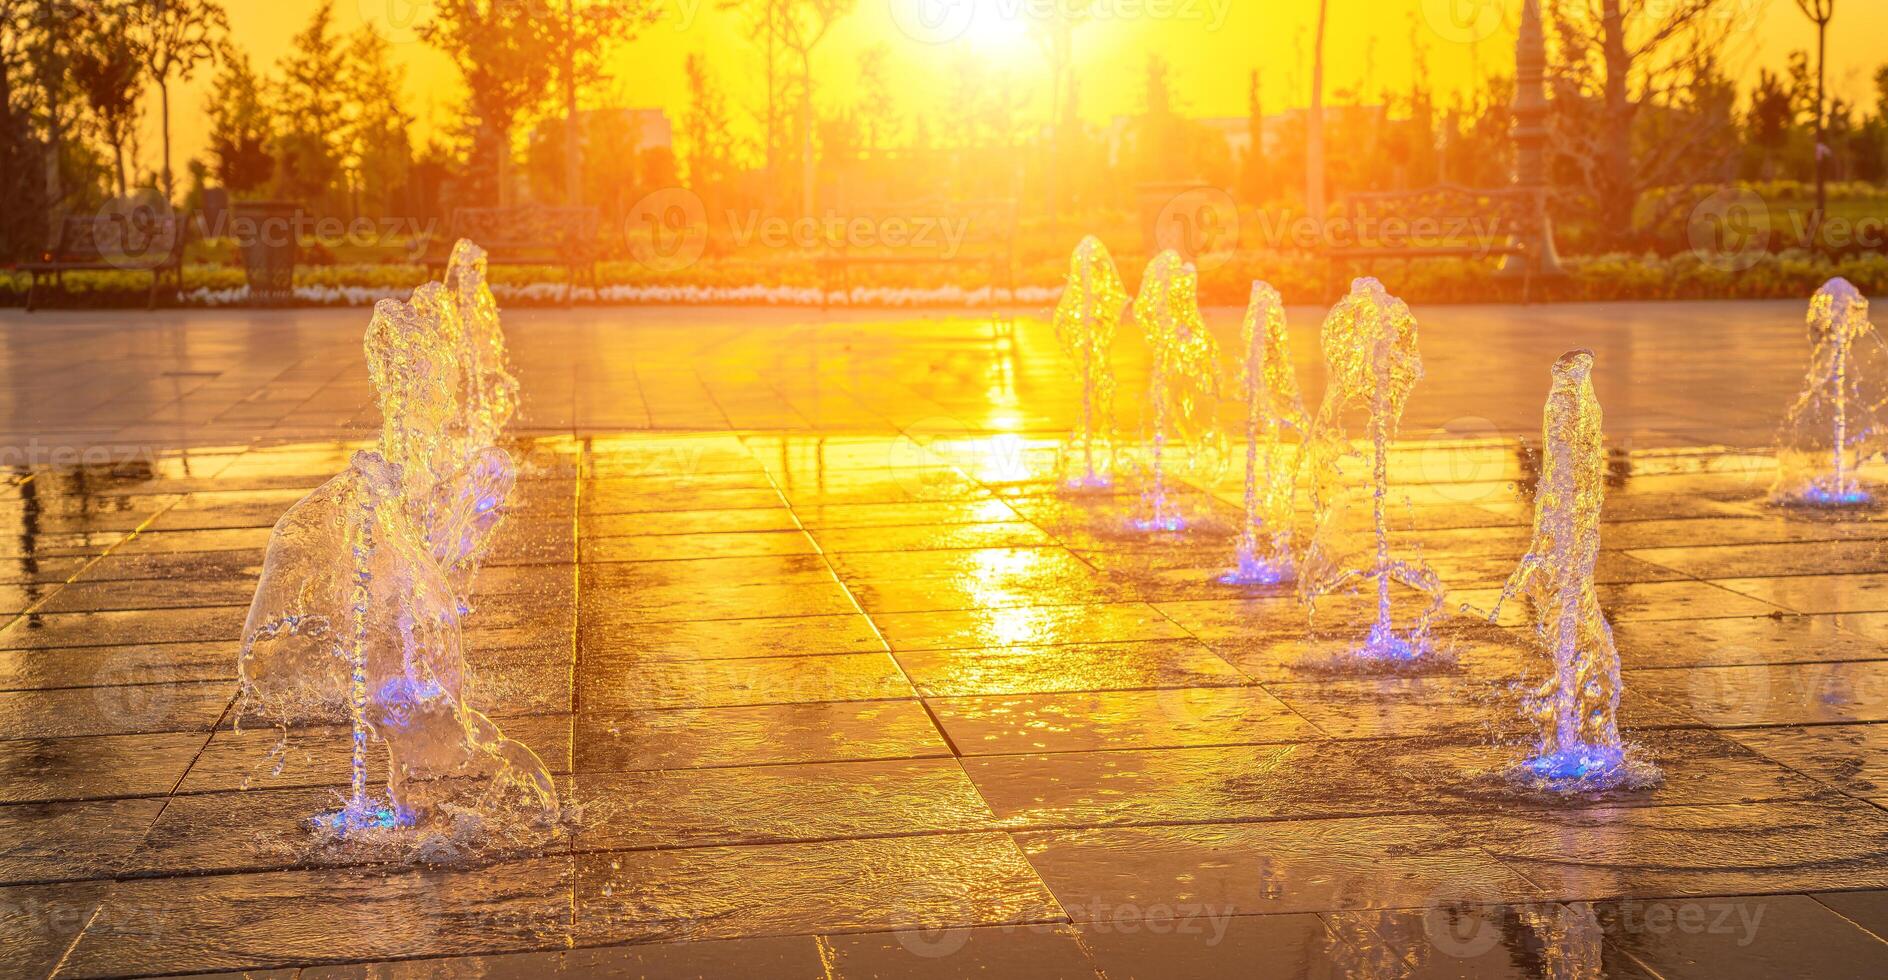 piccolo fontane su il marciapiede, illuminato di luce del sole a tramonto o Alba a estate. foto